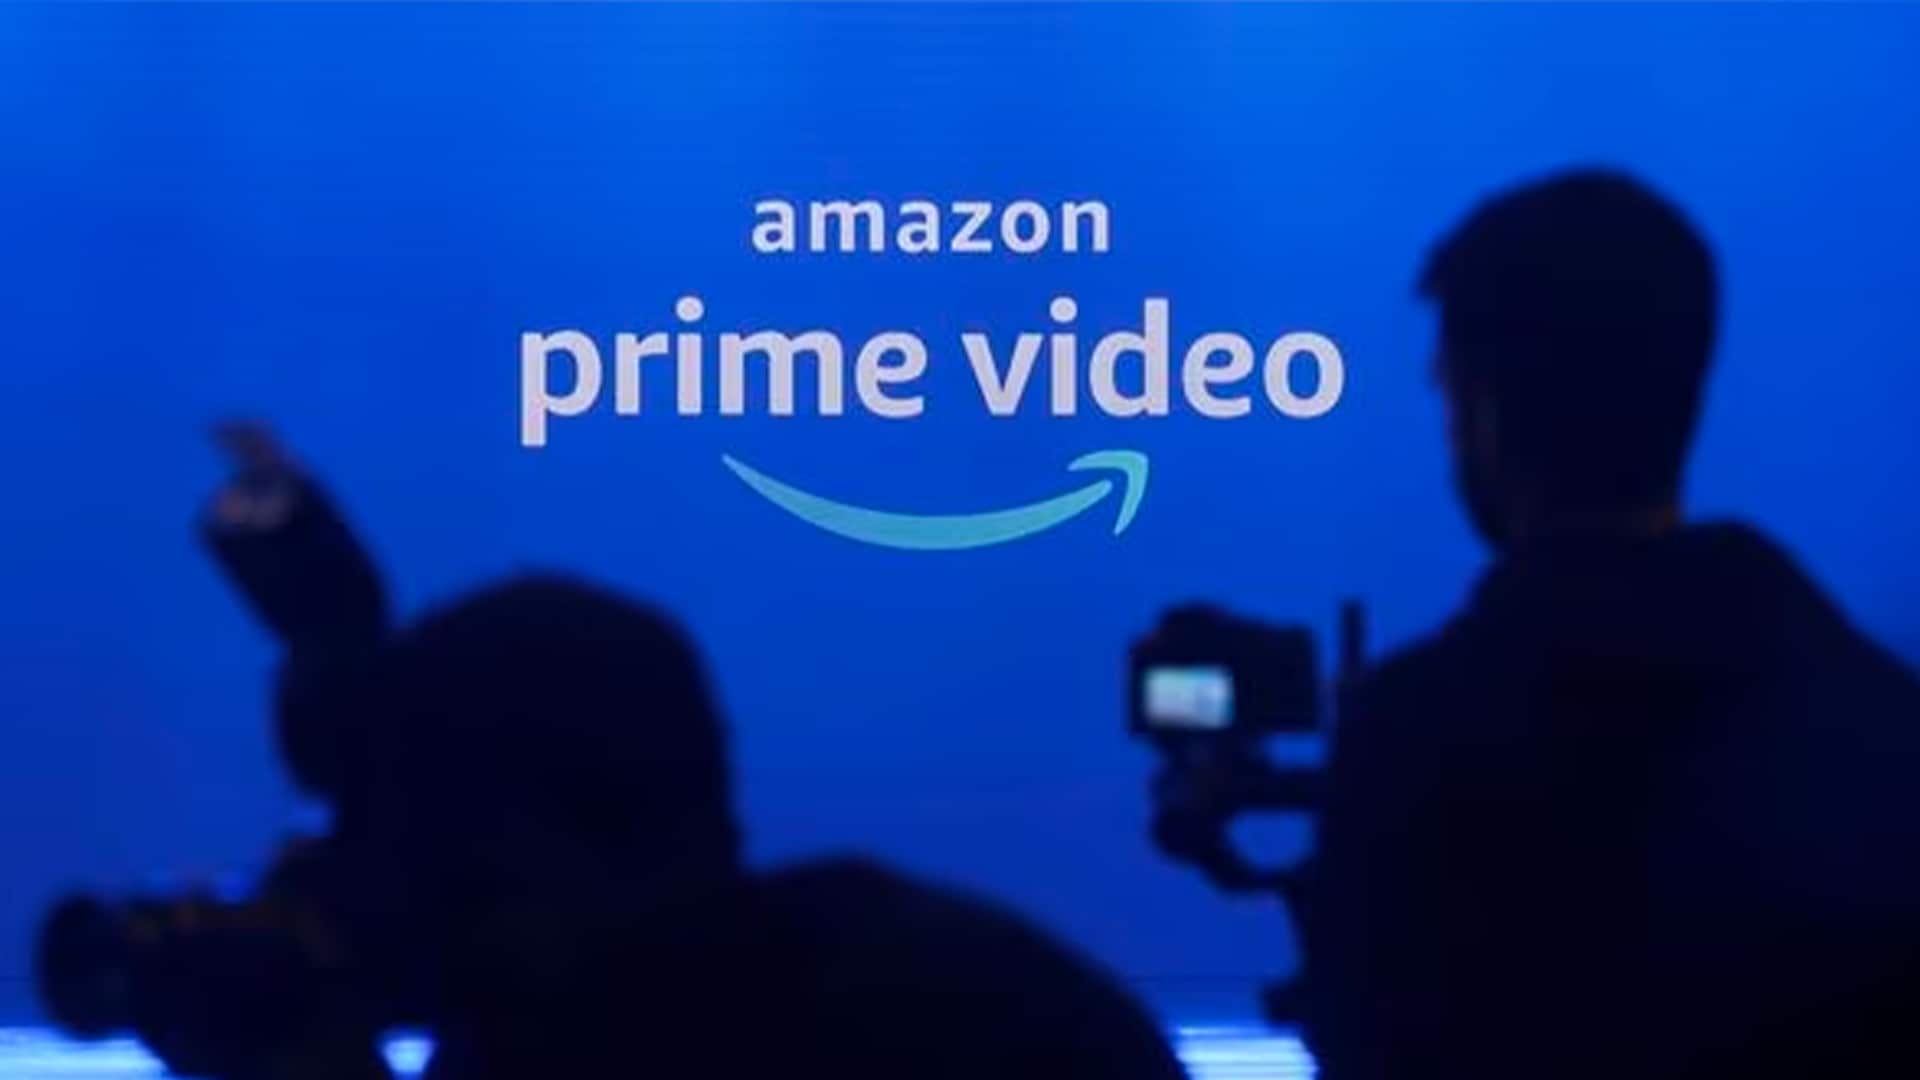 Amazon plant, Anzeigen in Prime Video zu schalten und den Nutzern für das Überspringen dieser Werbung einen Aufpreis in Rechnung zu stellen